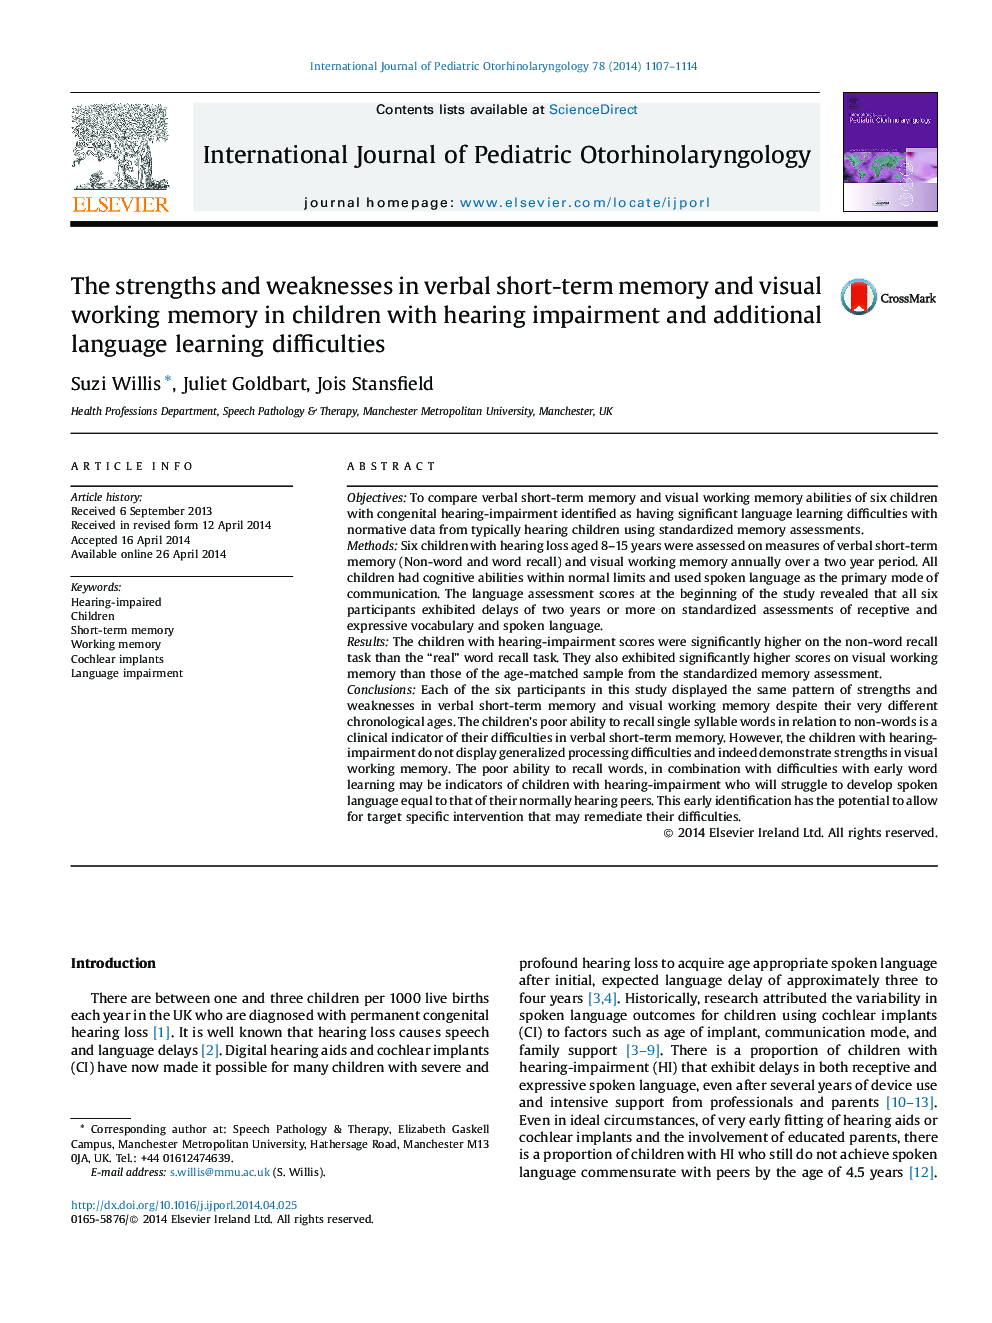 نقاط قوت و ضعف حافظه کوتاه مدت و حافظه کاری بصری در کودکان مبتلا به اختلالات شنوایی و مشکلات یادگیری زبان دیگر 